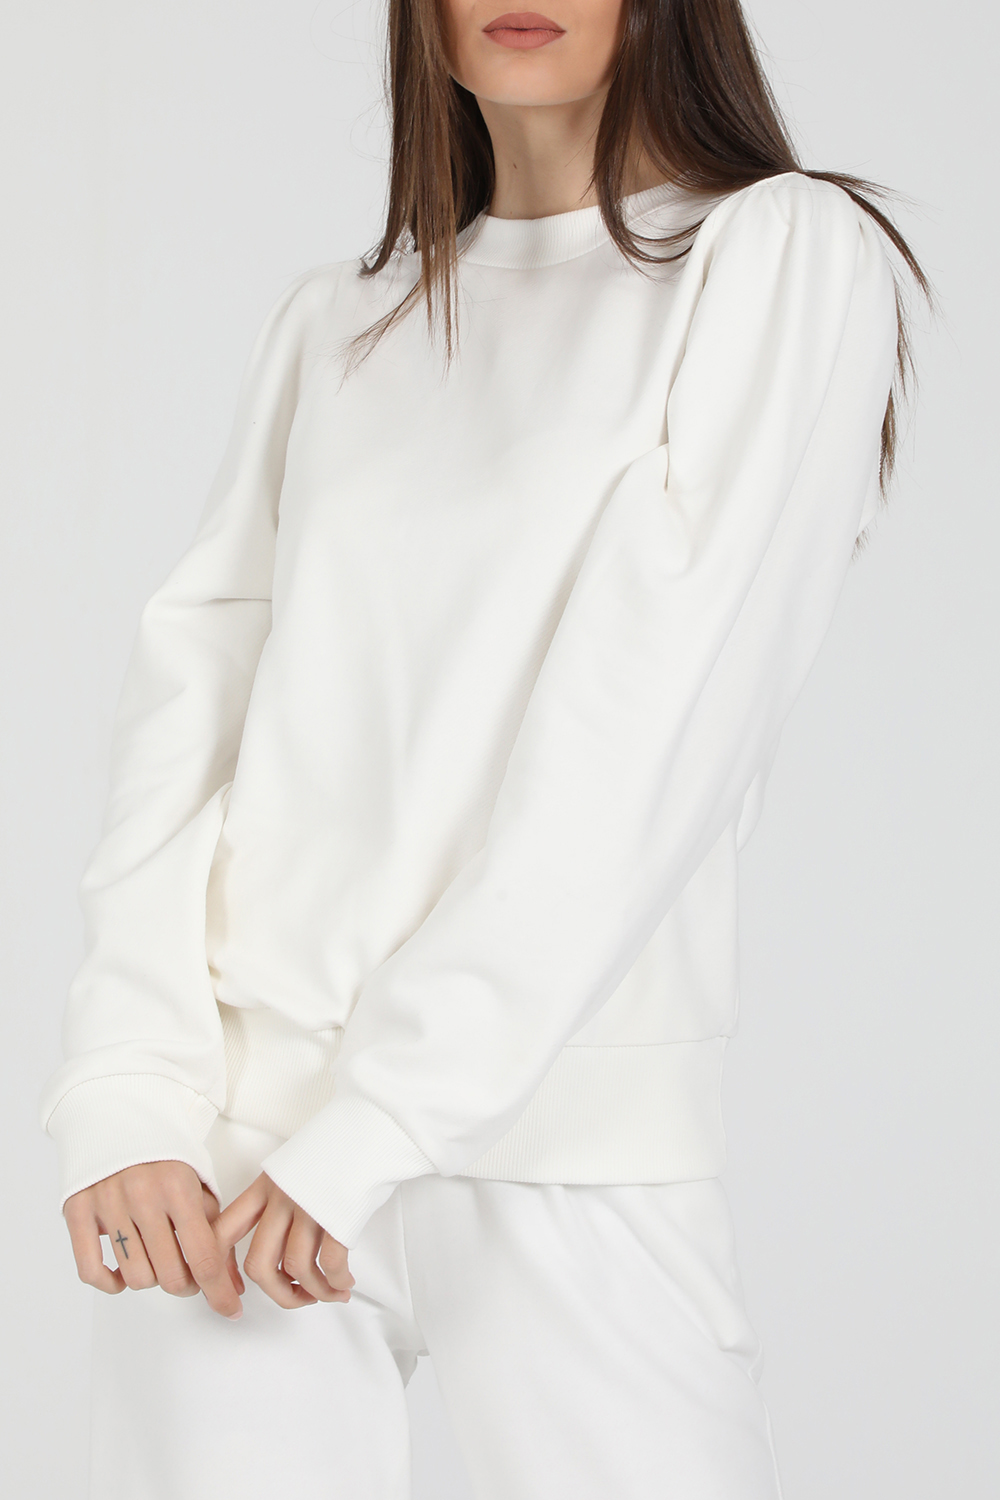 Γυναικεία/Ρούχα/Φούτερ/Μπλούζες LA DOLLS - Γυναικεία φούτερ μπλούζα LA DOLLS SOPHIE λευκή